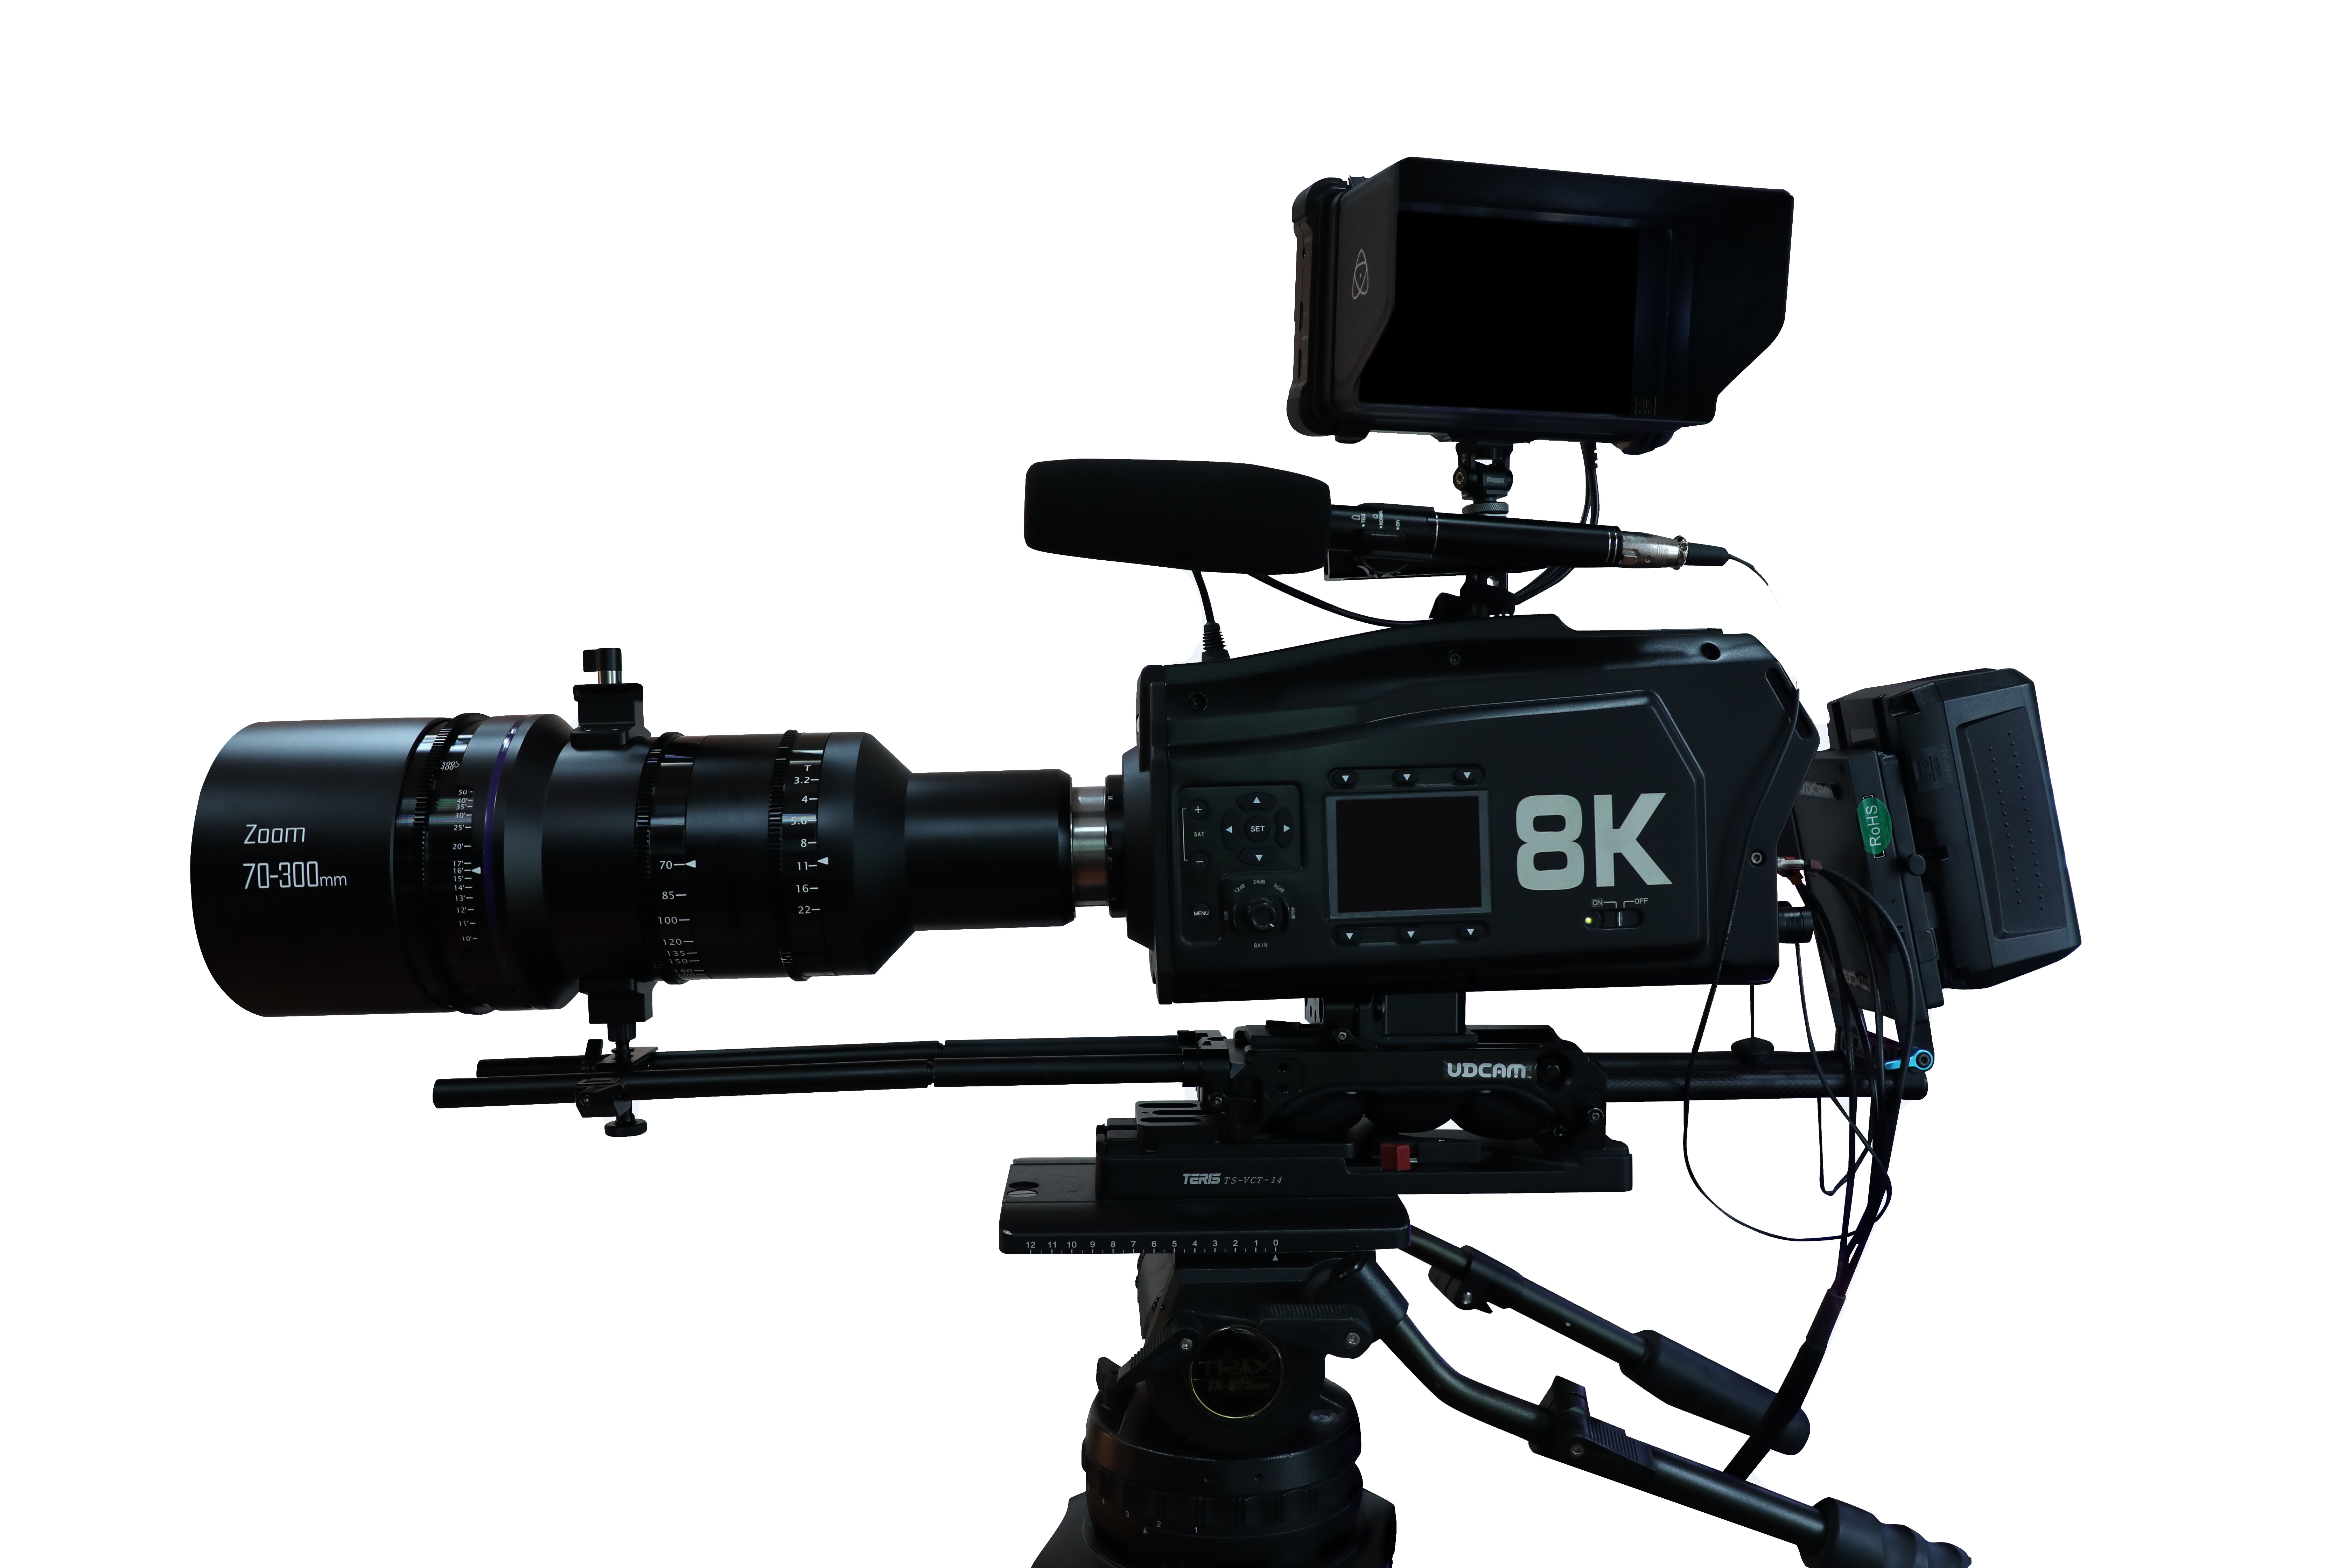 8K摄像机      清晰度 8192×4320;7680×4320 帧率 50p、59.94p、60p(24p、25p、30p4K 或高清) (通过固件升级可至 100p/120p) 彩色色域 BT